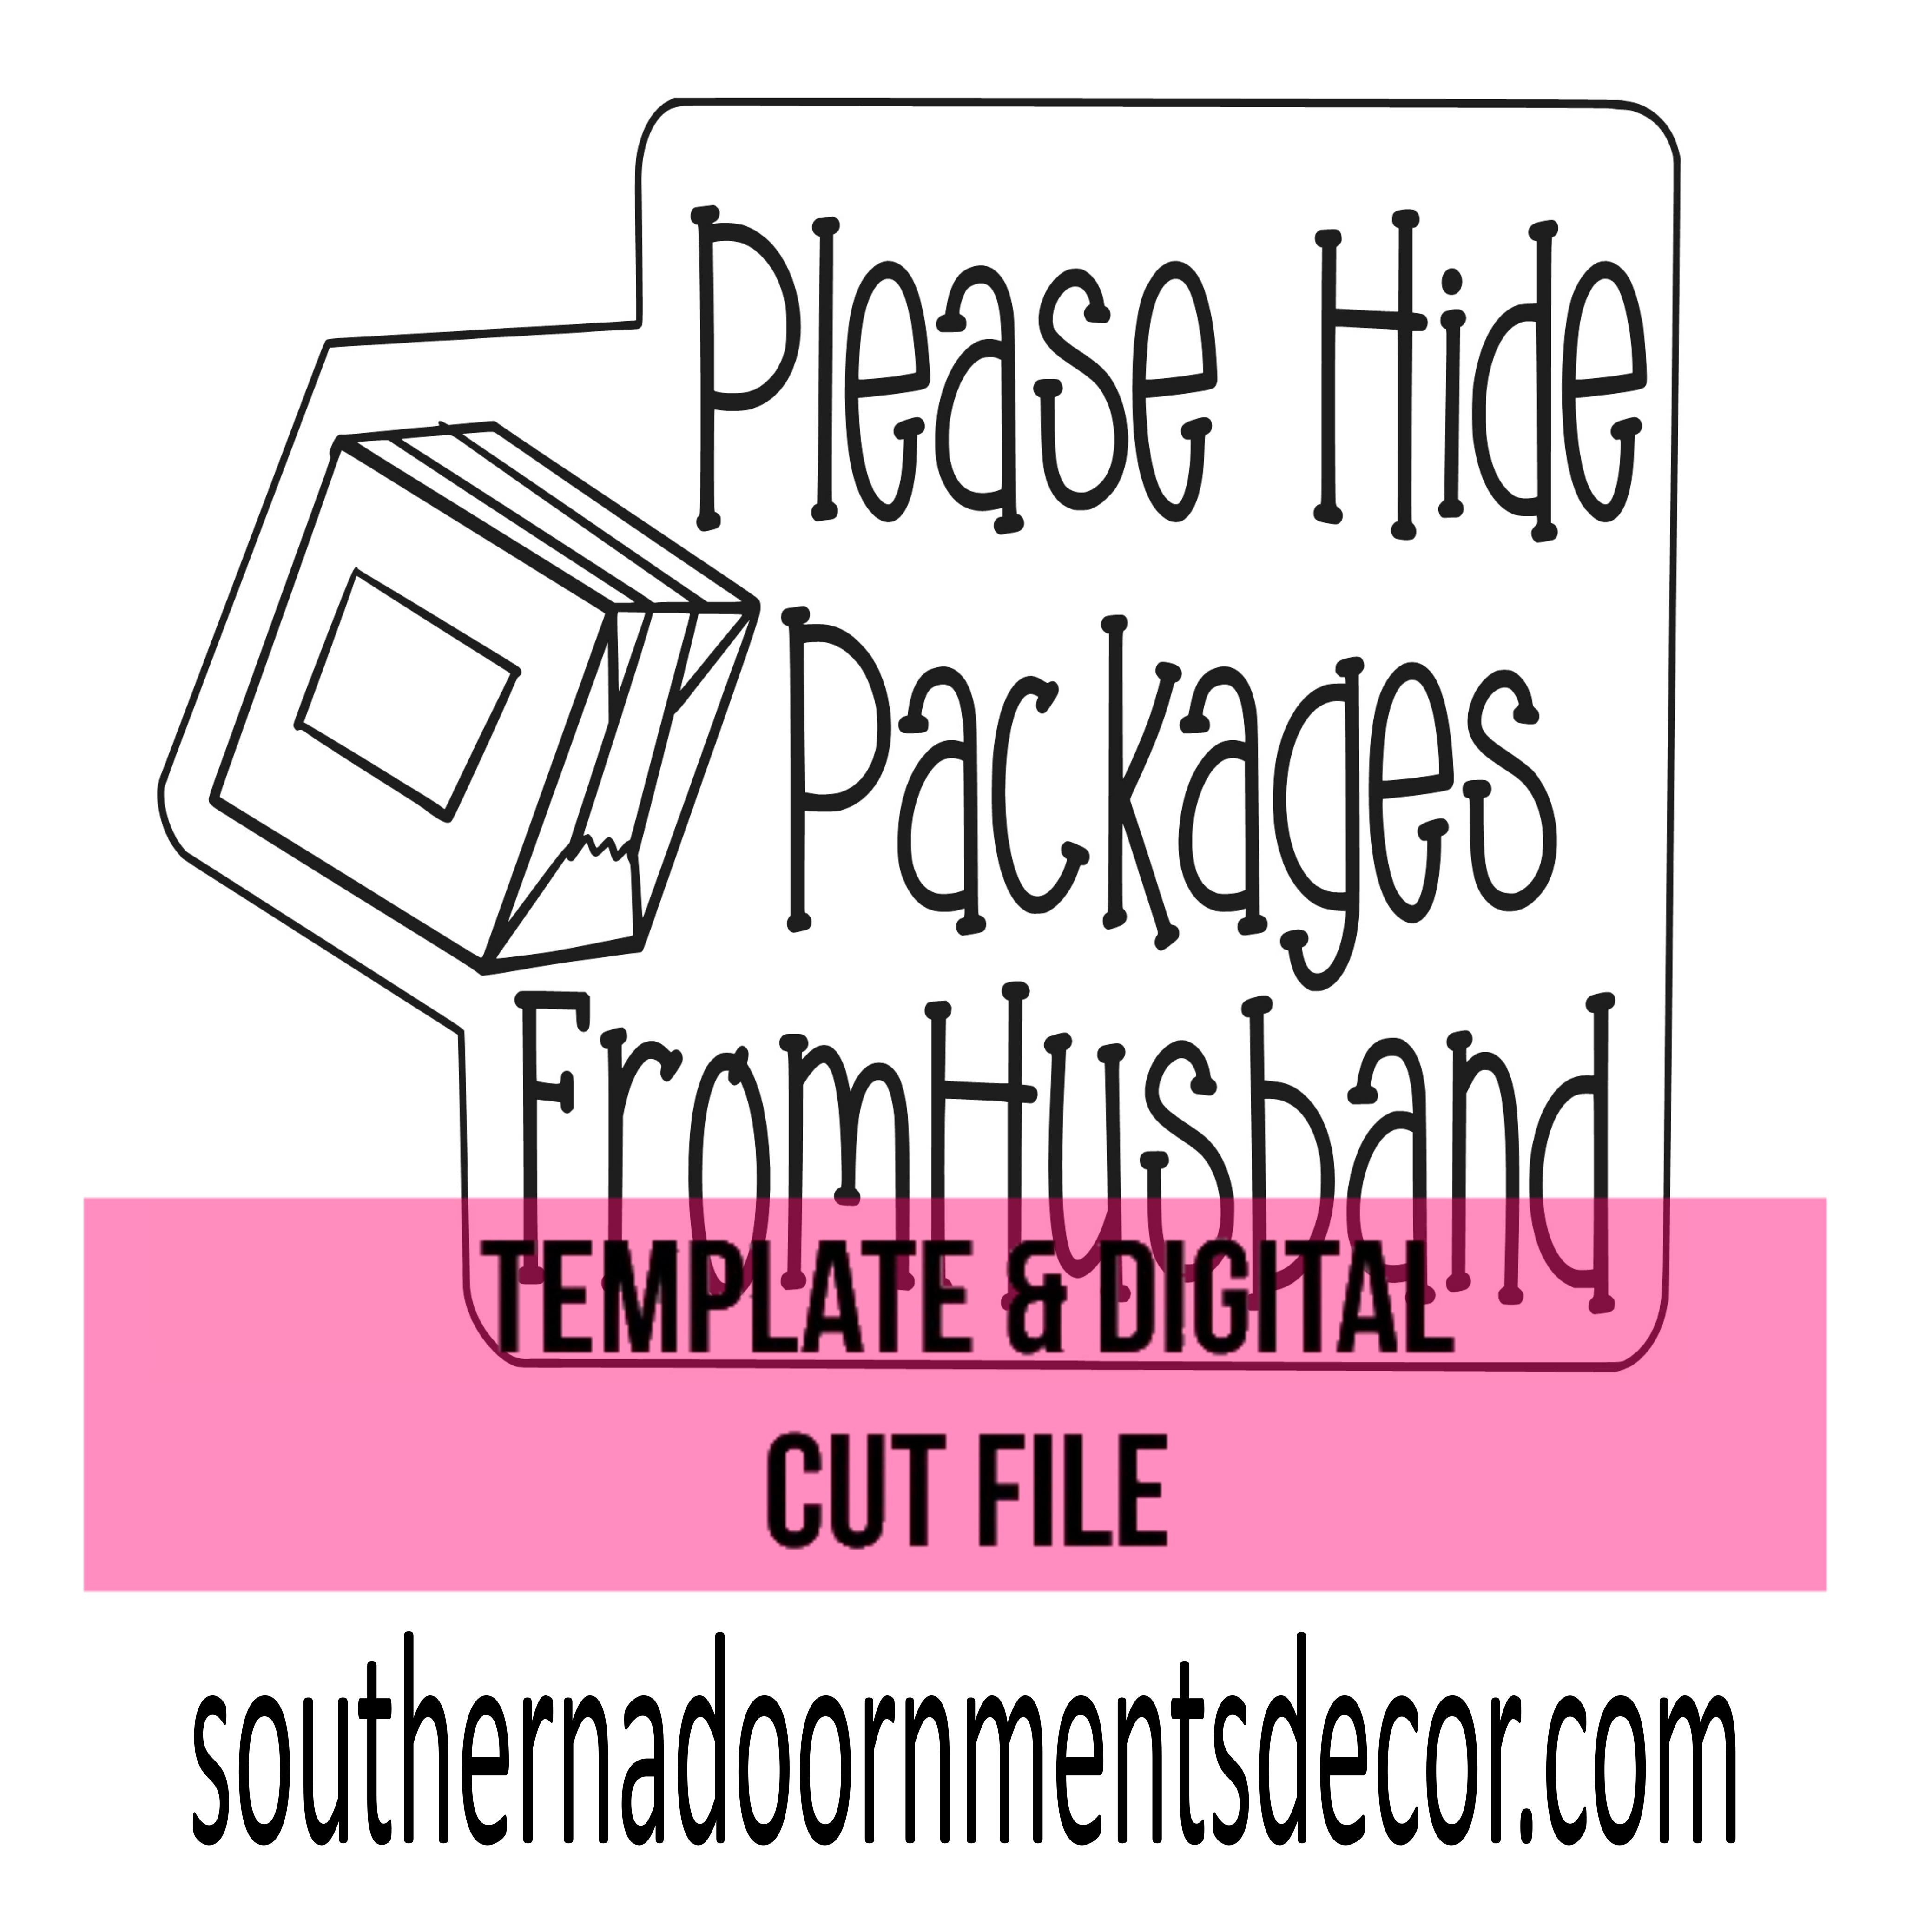 Hide Packages Template & Digital Cut File